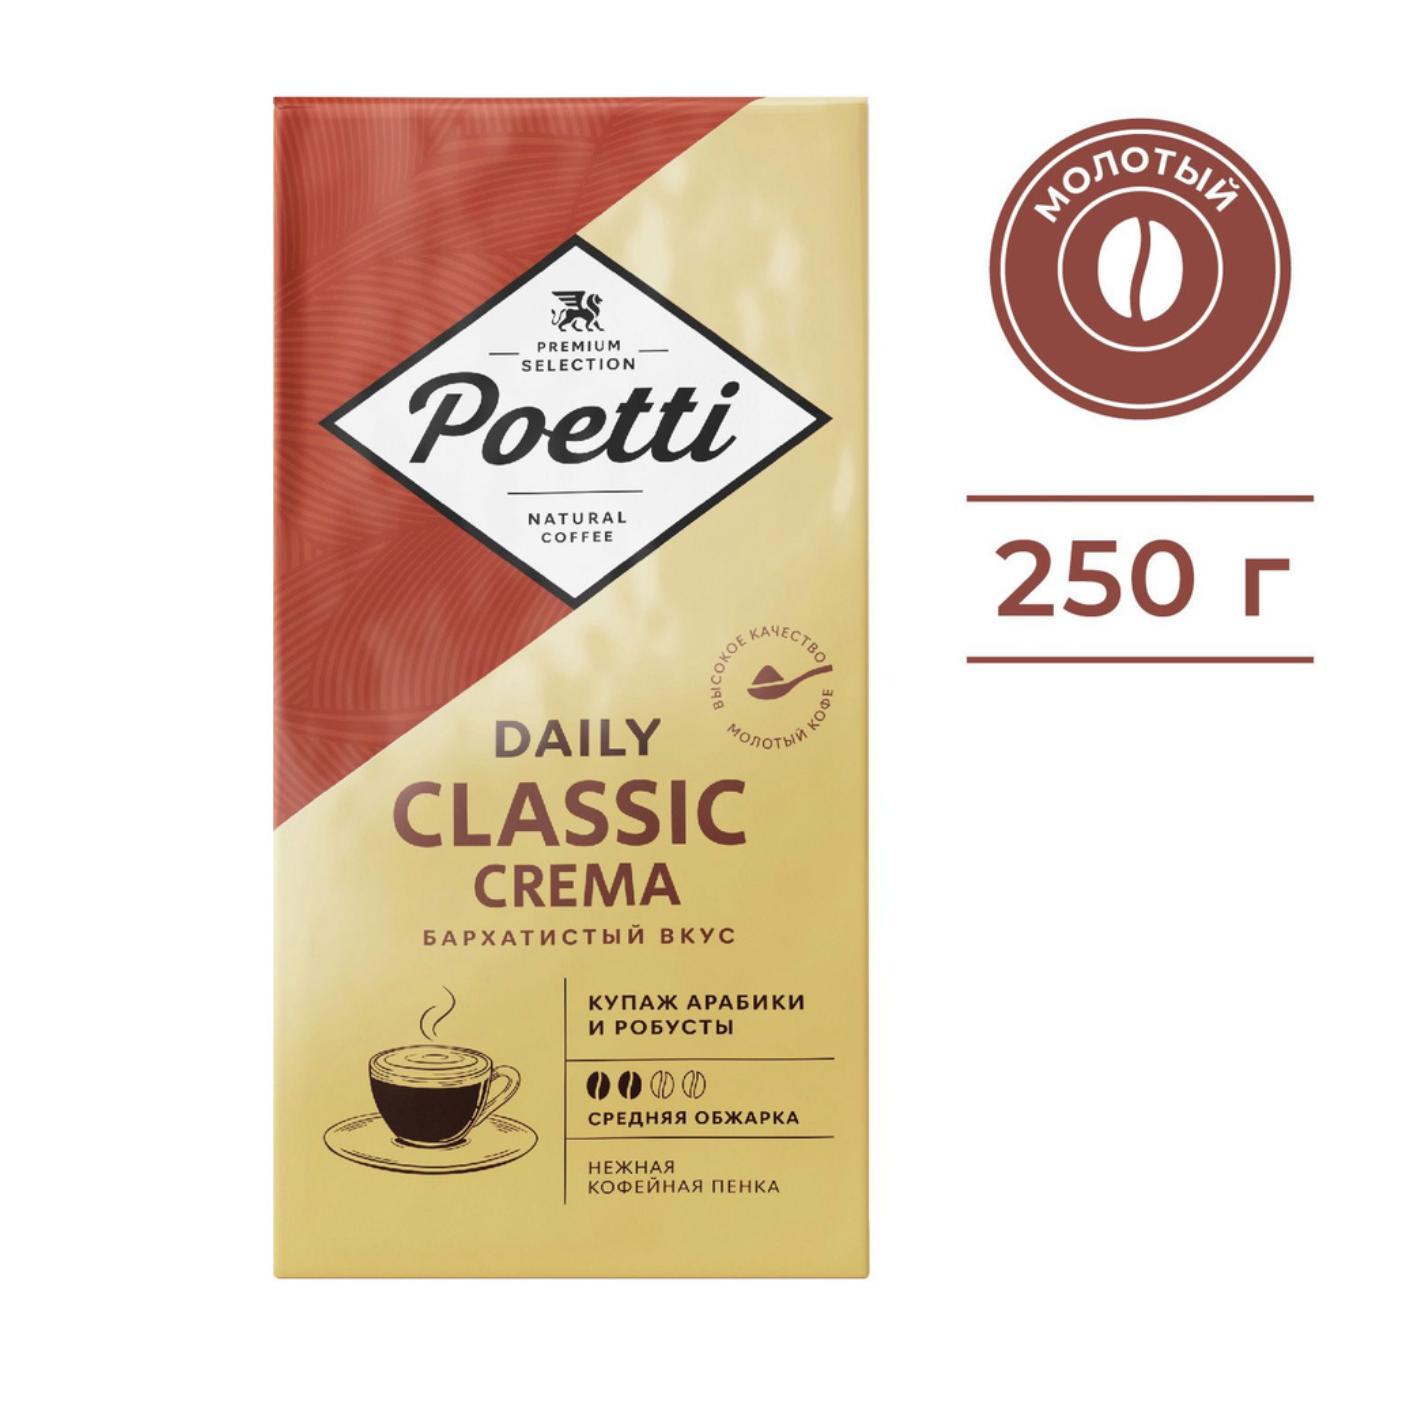 Кофе молотый Poetti Daily Classic Crema 250 гр., флоу-пак